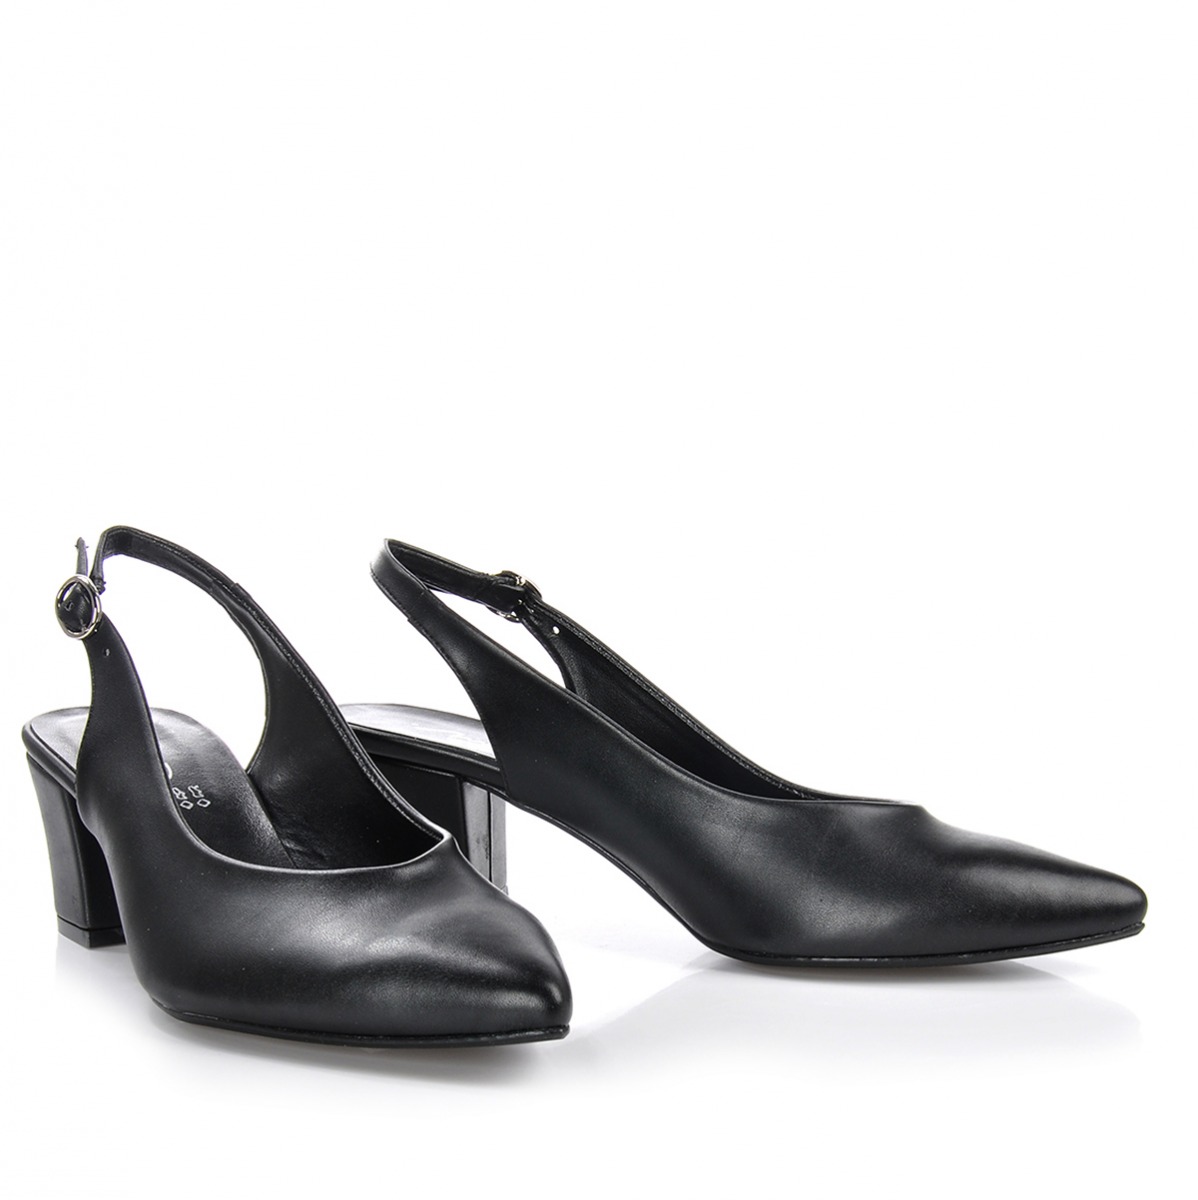 Flo Kadın  Siyah Klasik Topuklu Ayakkabı VZN-233Y. 4